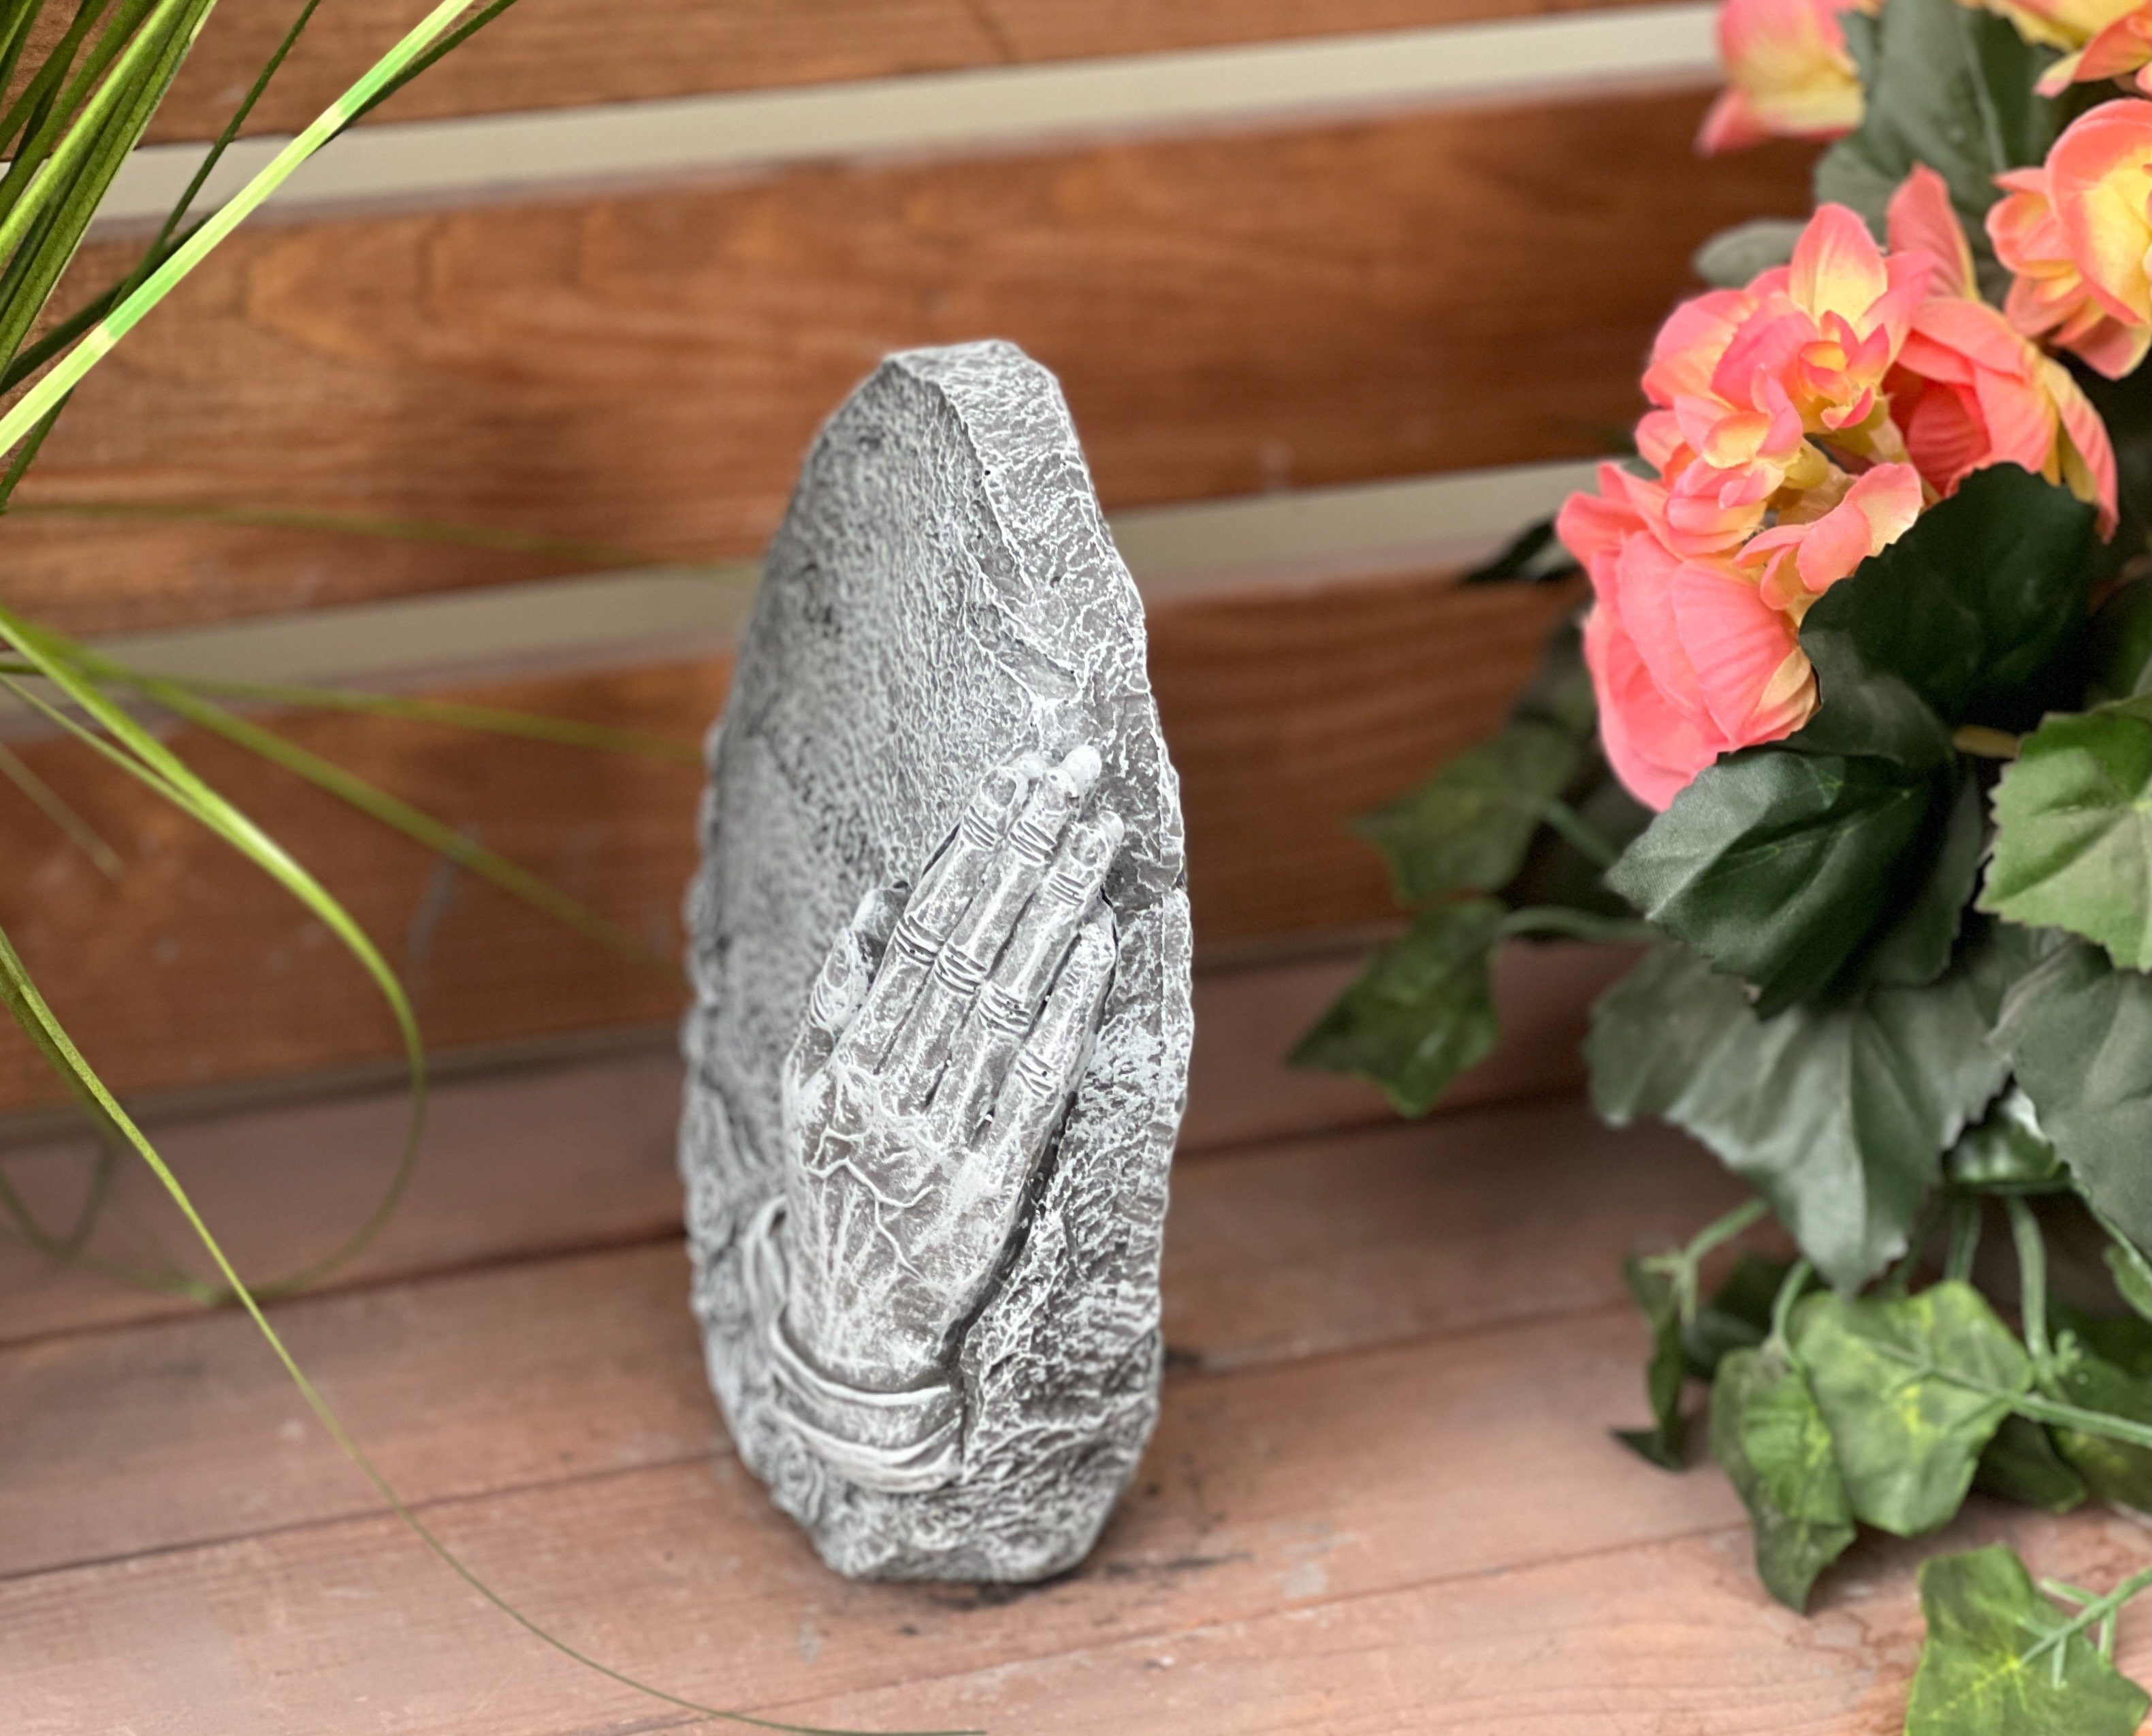 Stone and Style Gartenfigur Steinfigur gibt Kraft" frostfest Glaube Grabstein "Der uns